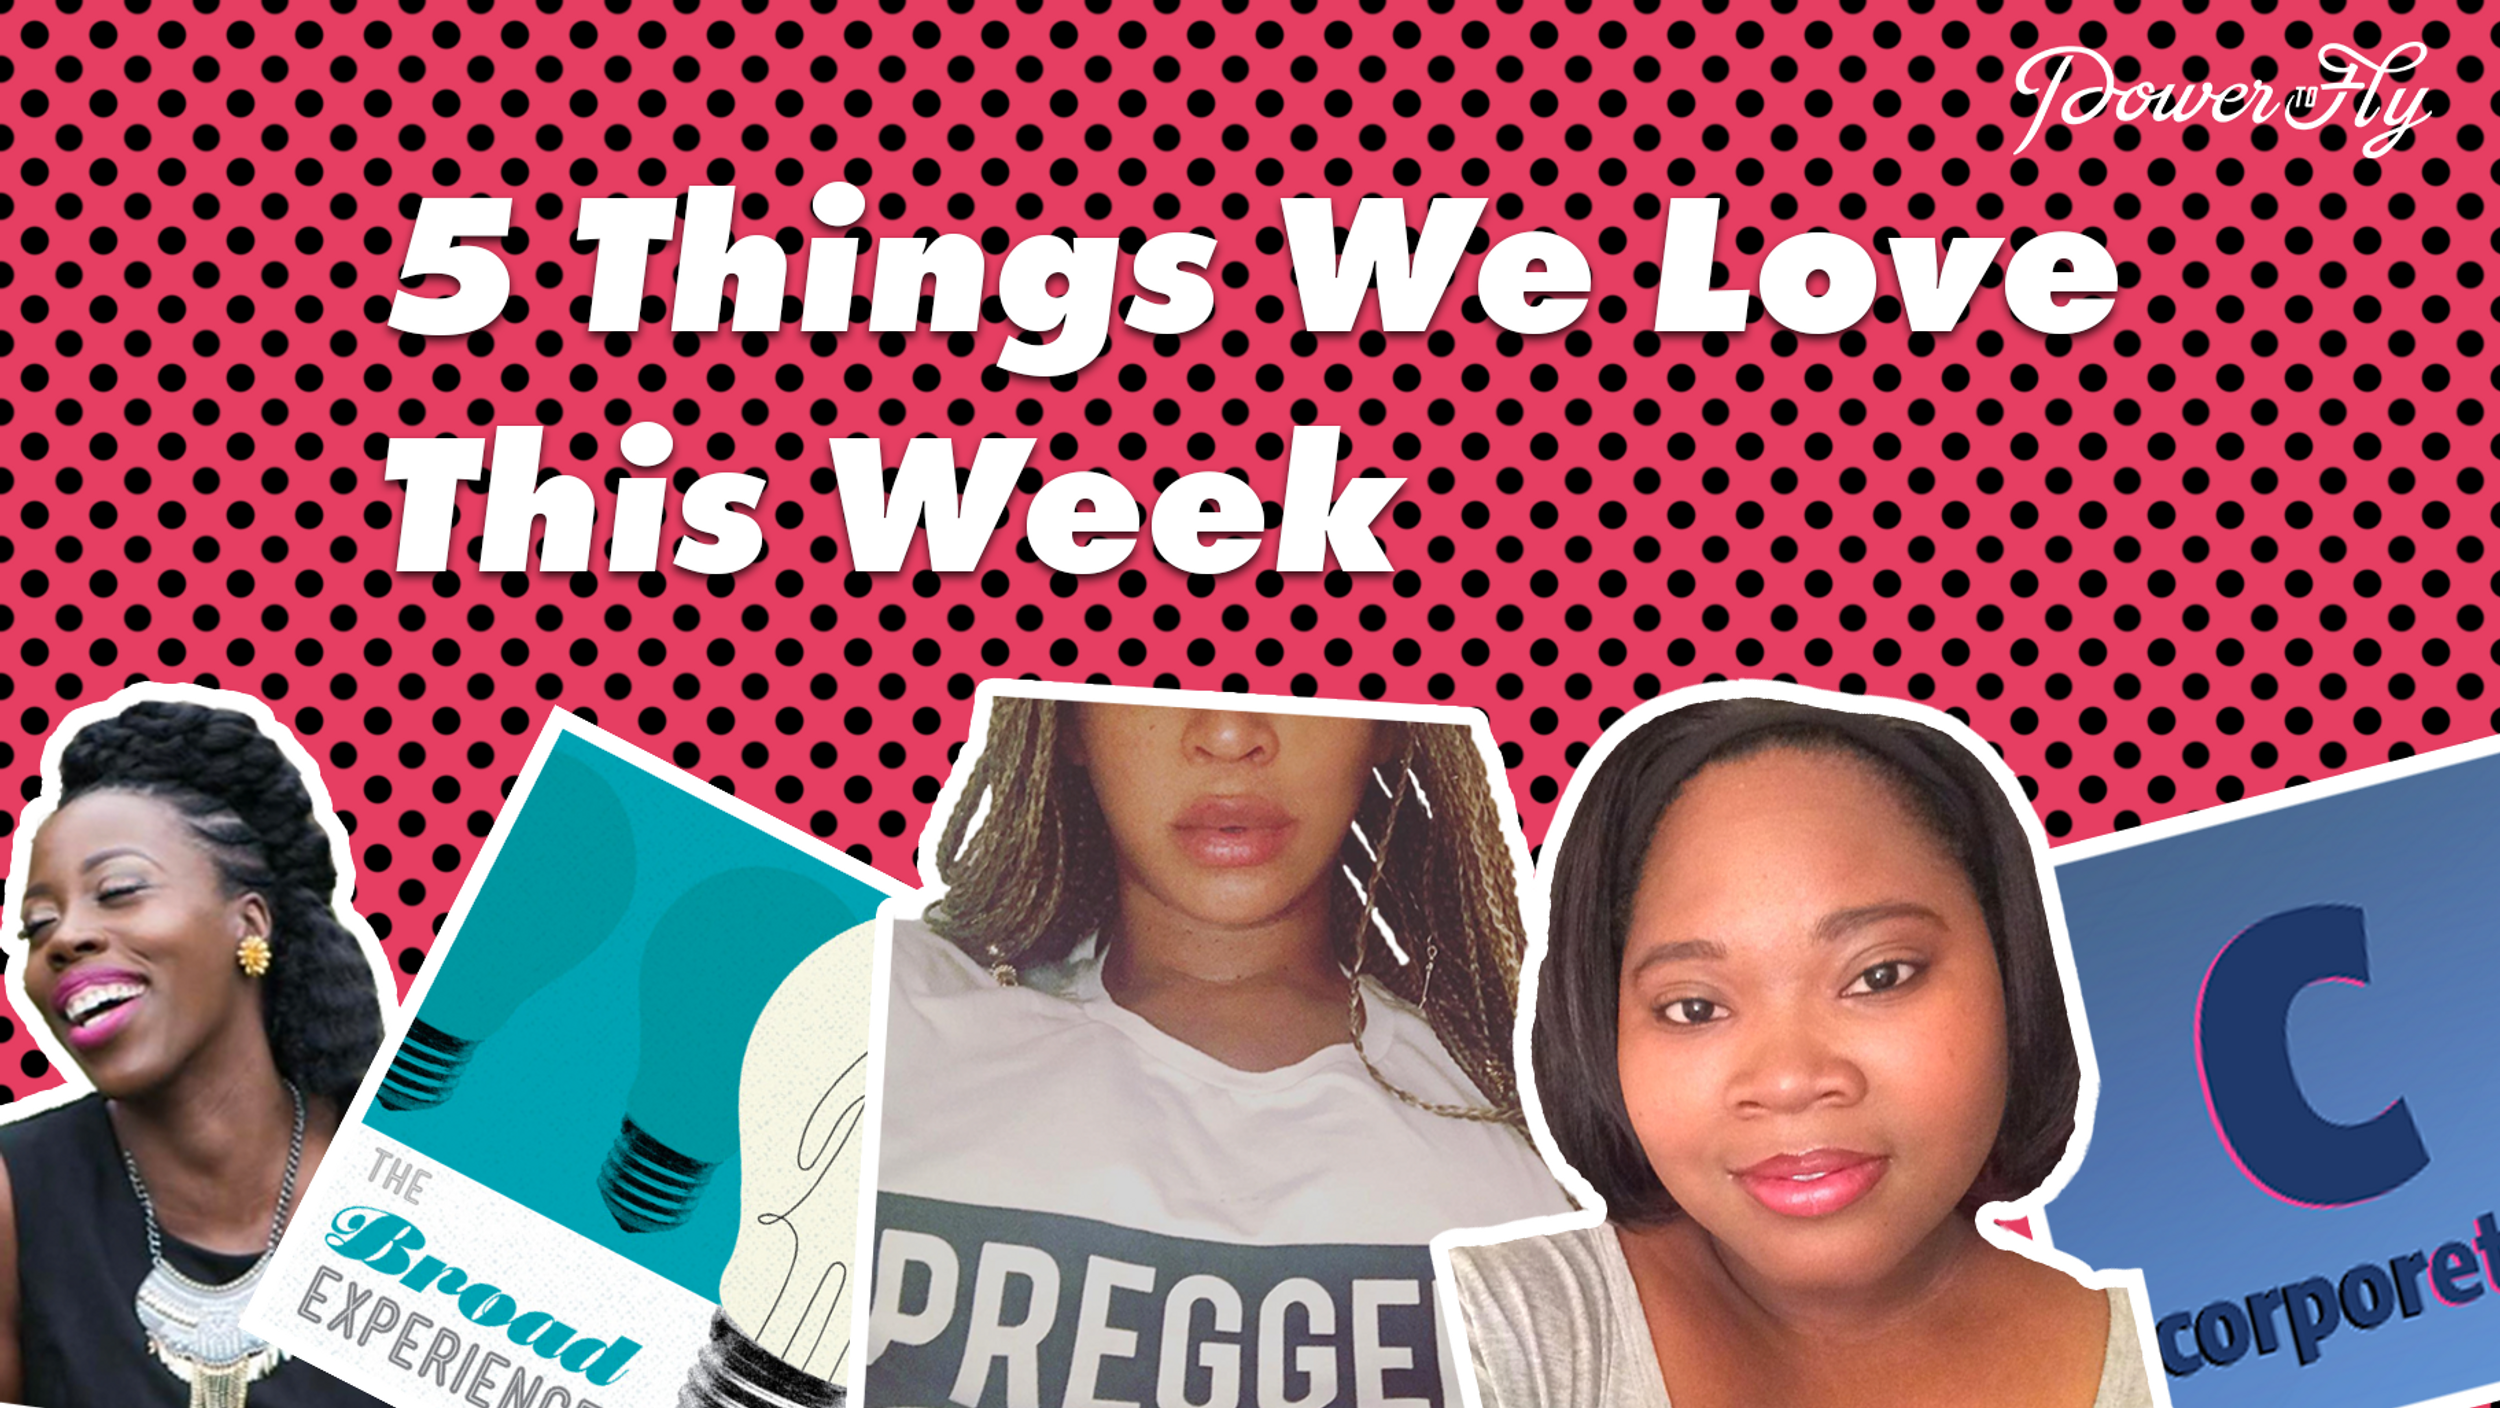 5 Things We Love This Week - May 23, 2017